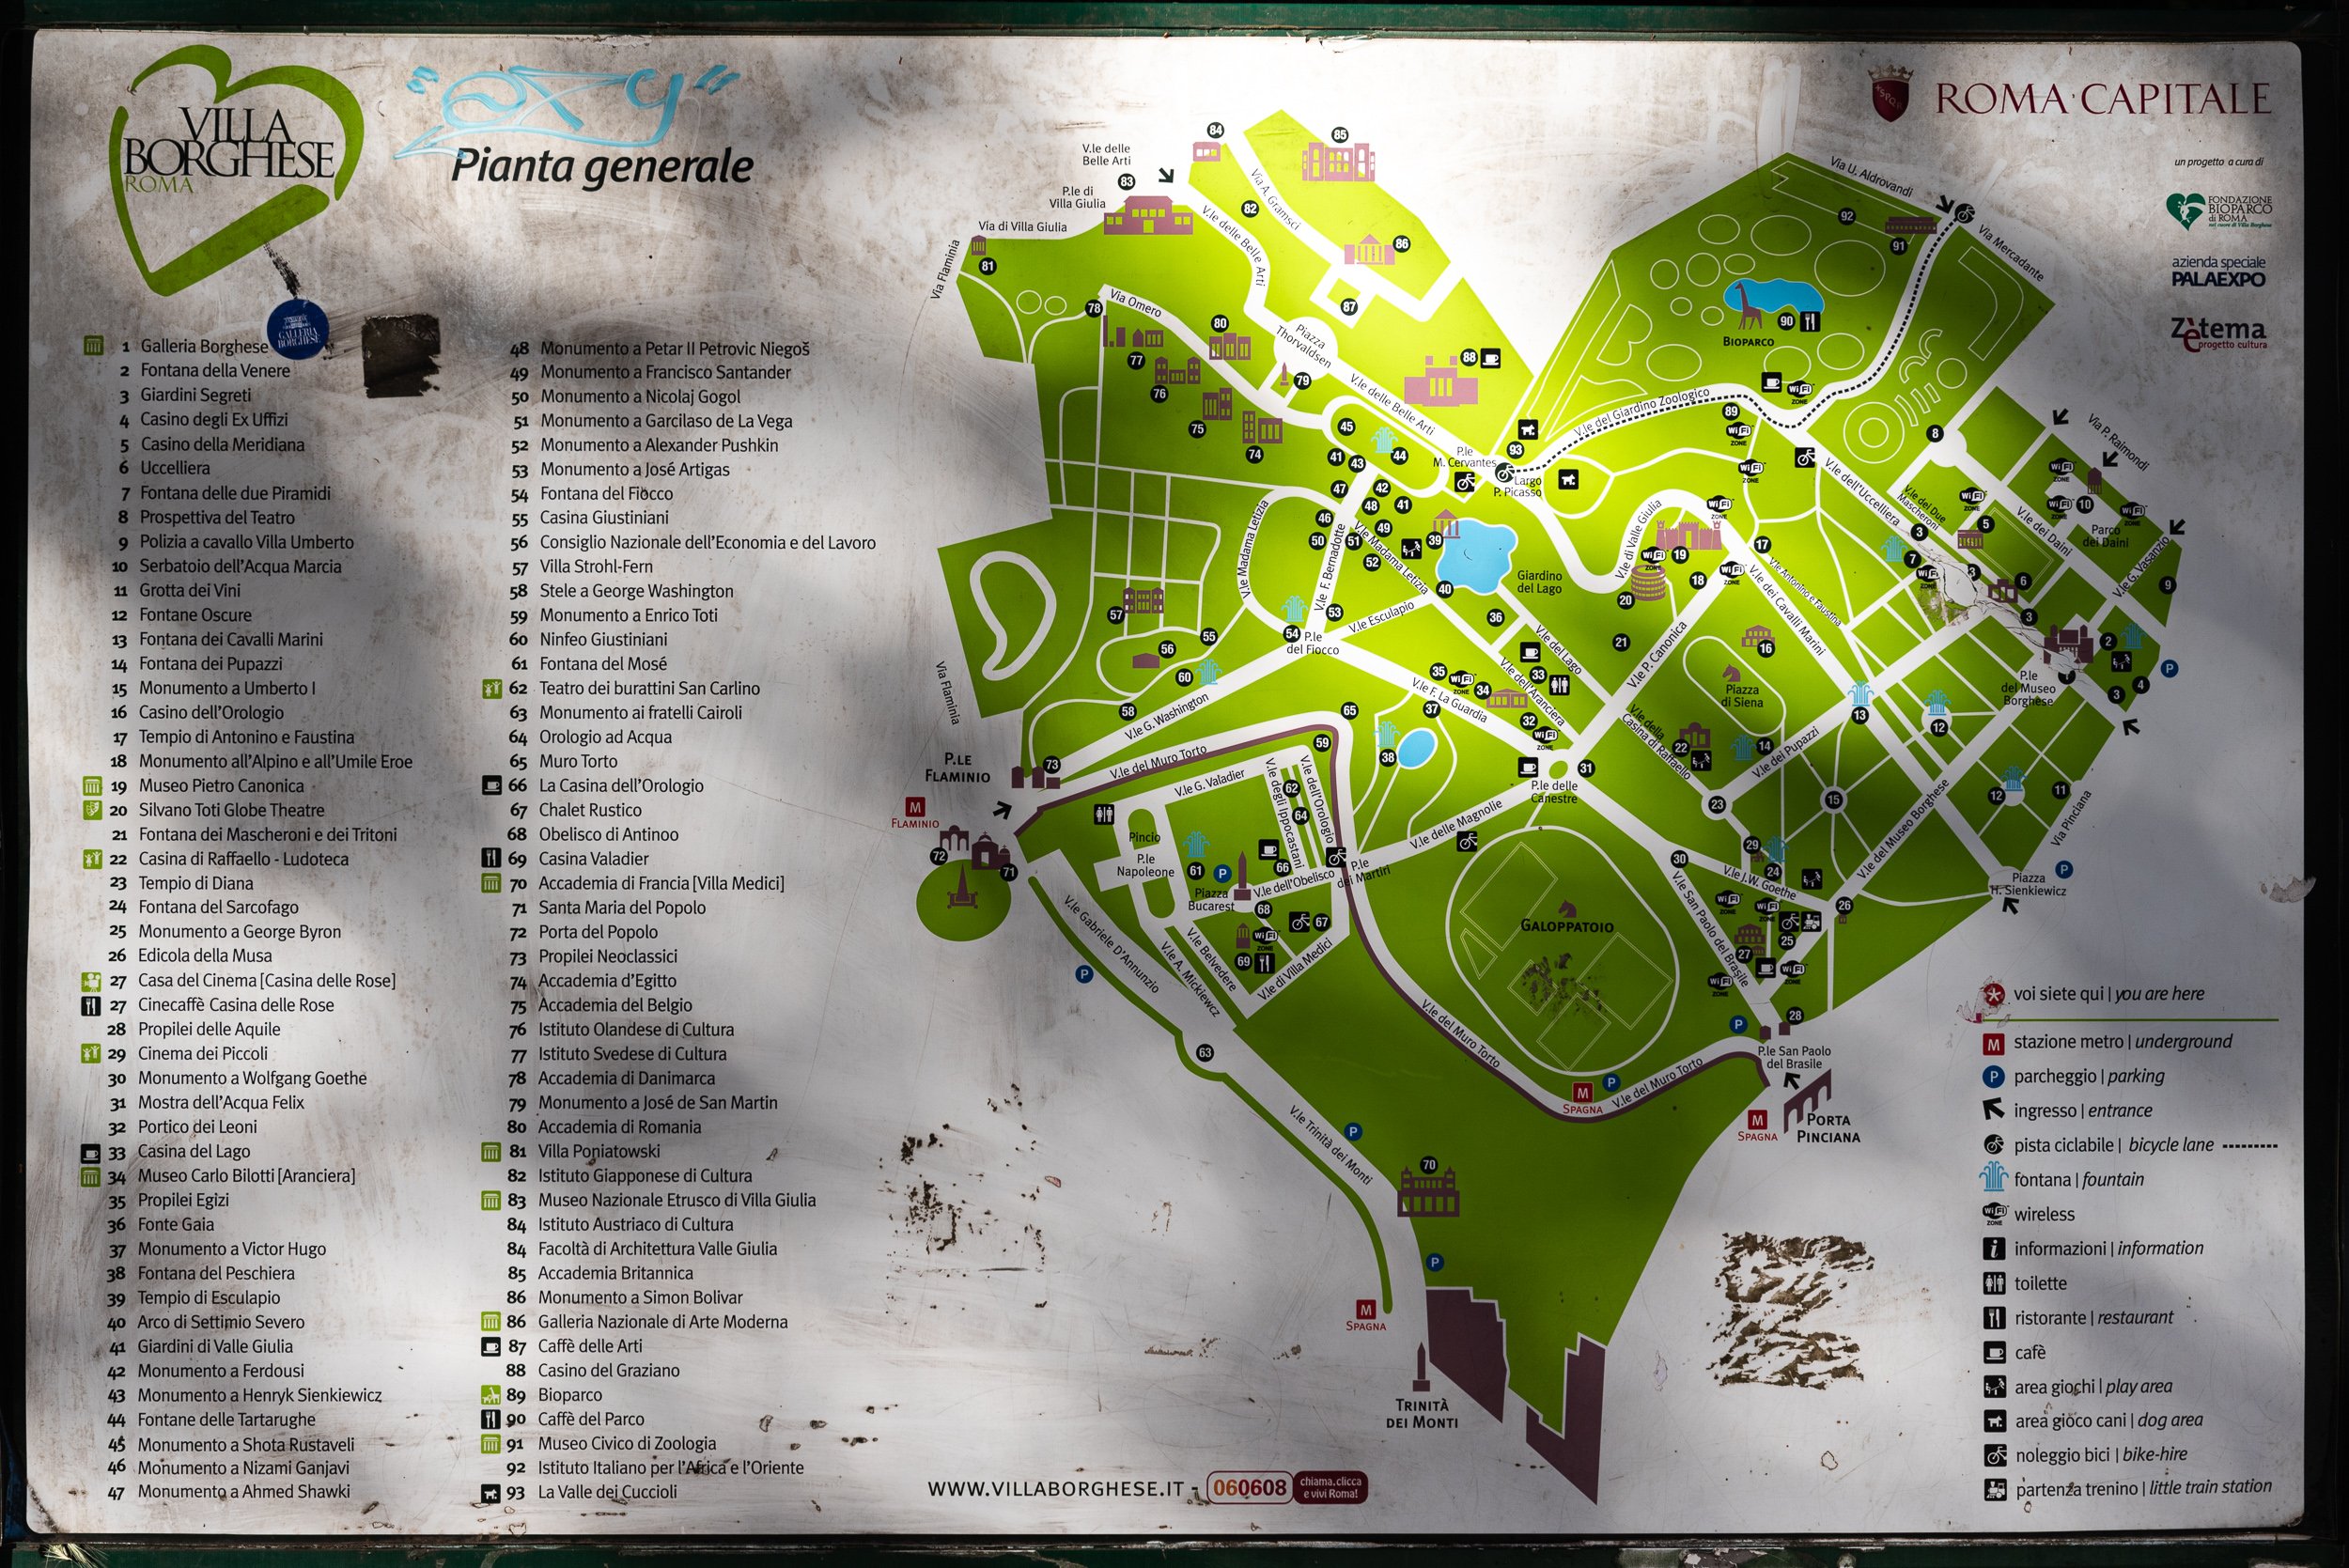 Villa Borghese Gardens - Map